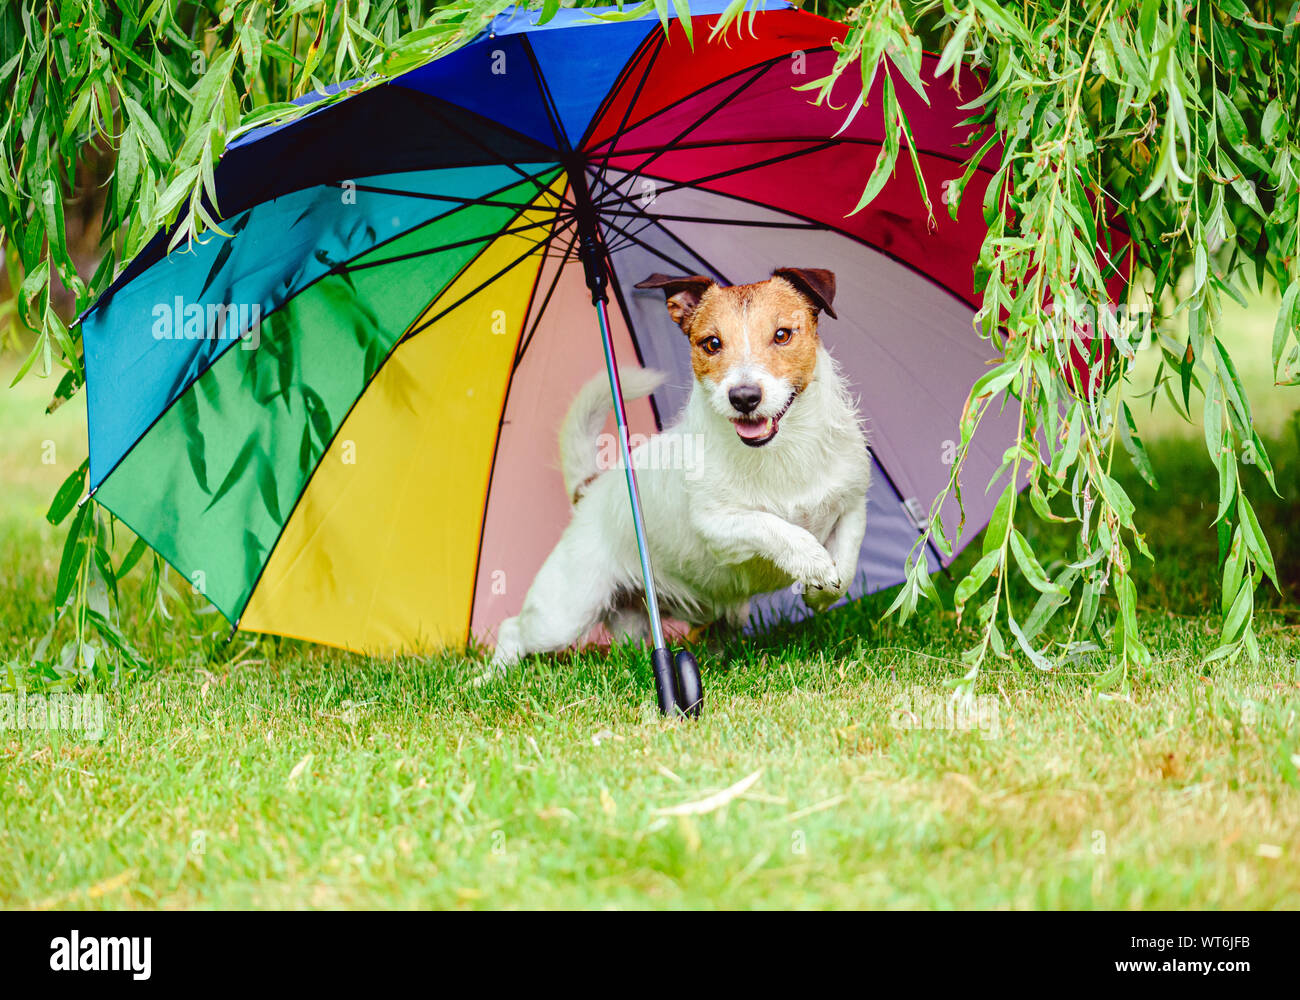 Gute Laune bei schlechtem Wetter Konzept mit lustigen Hund spielen unter bunten Regenschirm Stockfoto